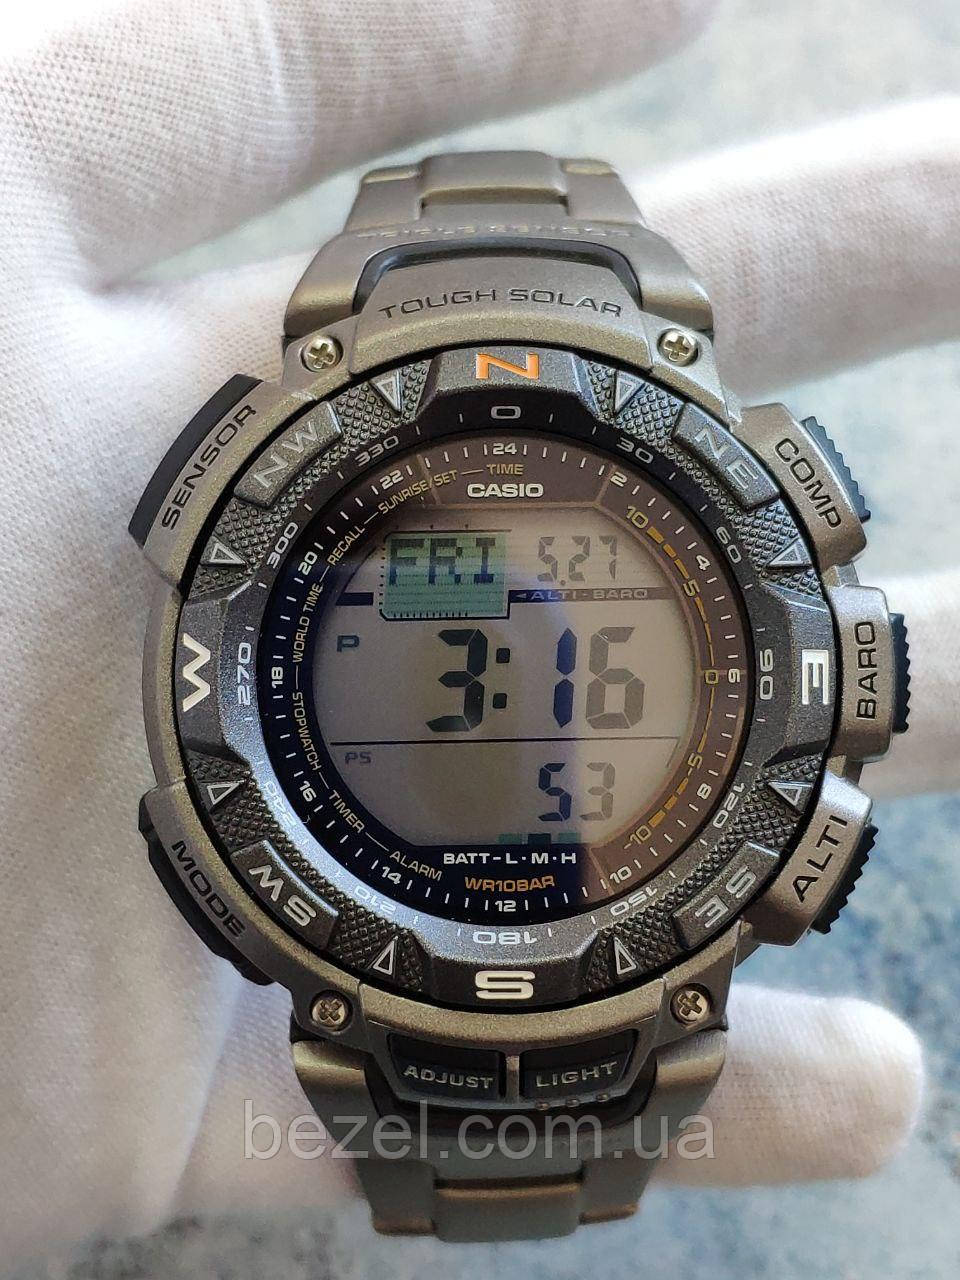 Купить часы Casio PRO-TREK PRG-240T-7ER Касио противоударные японские кварцевые, цена 18740 ₴ — Prom.ua (ID#548840145)